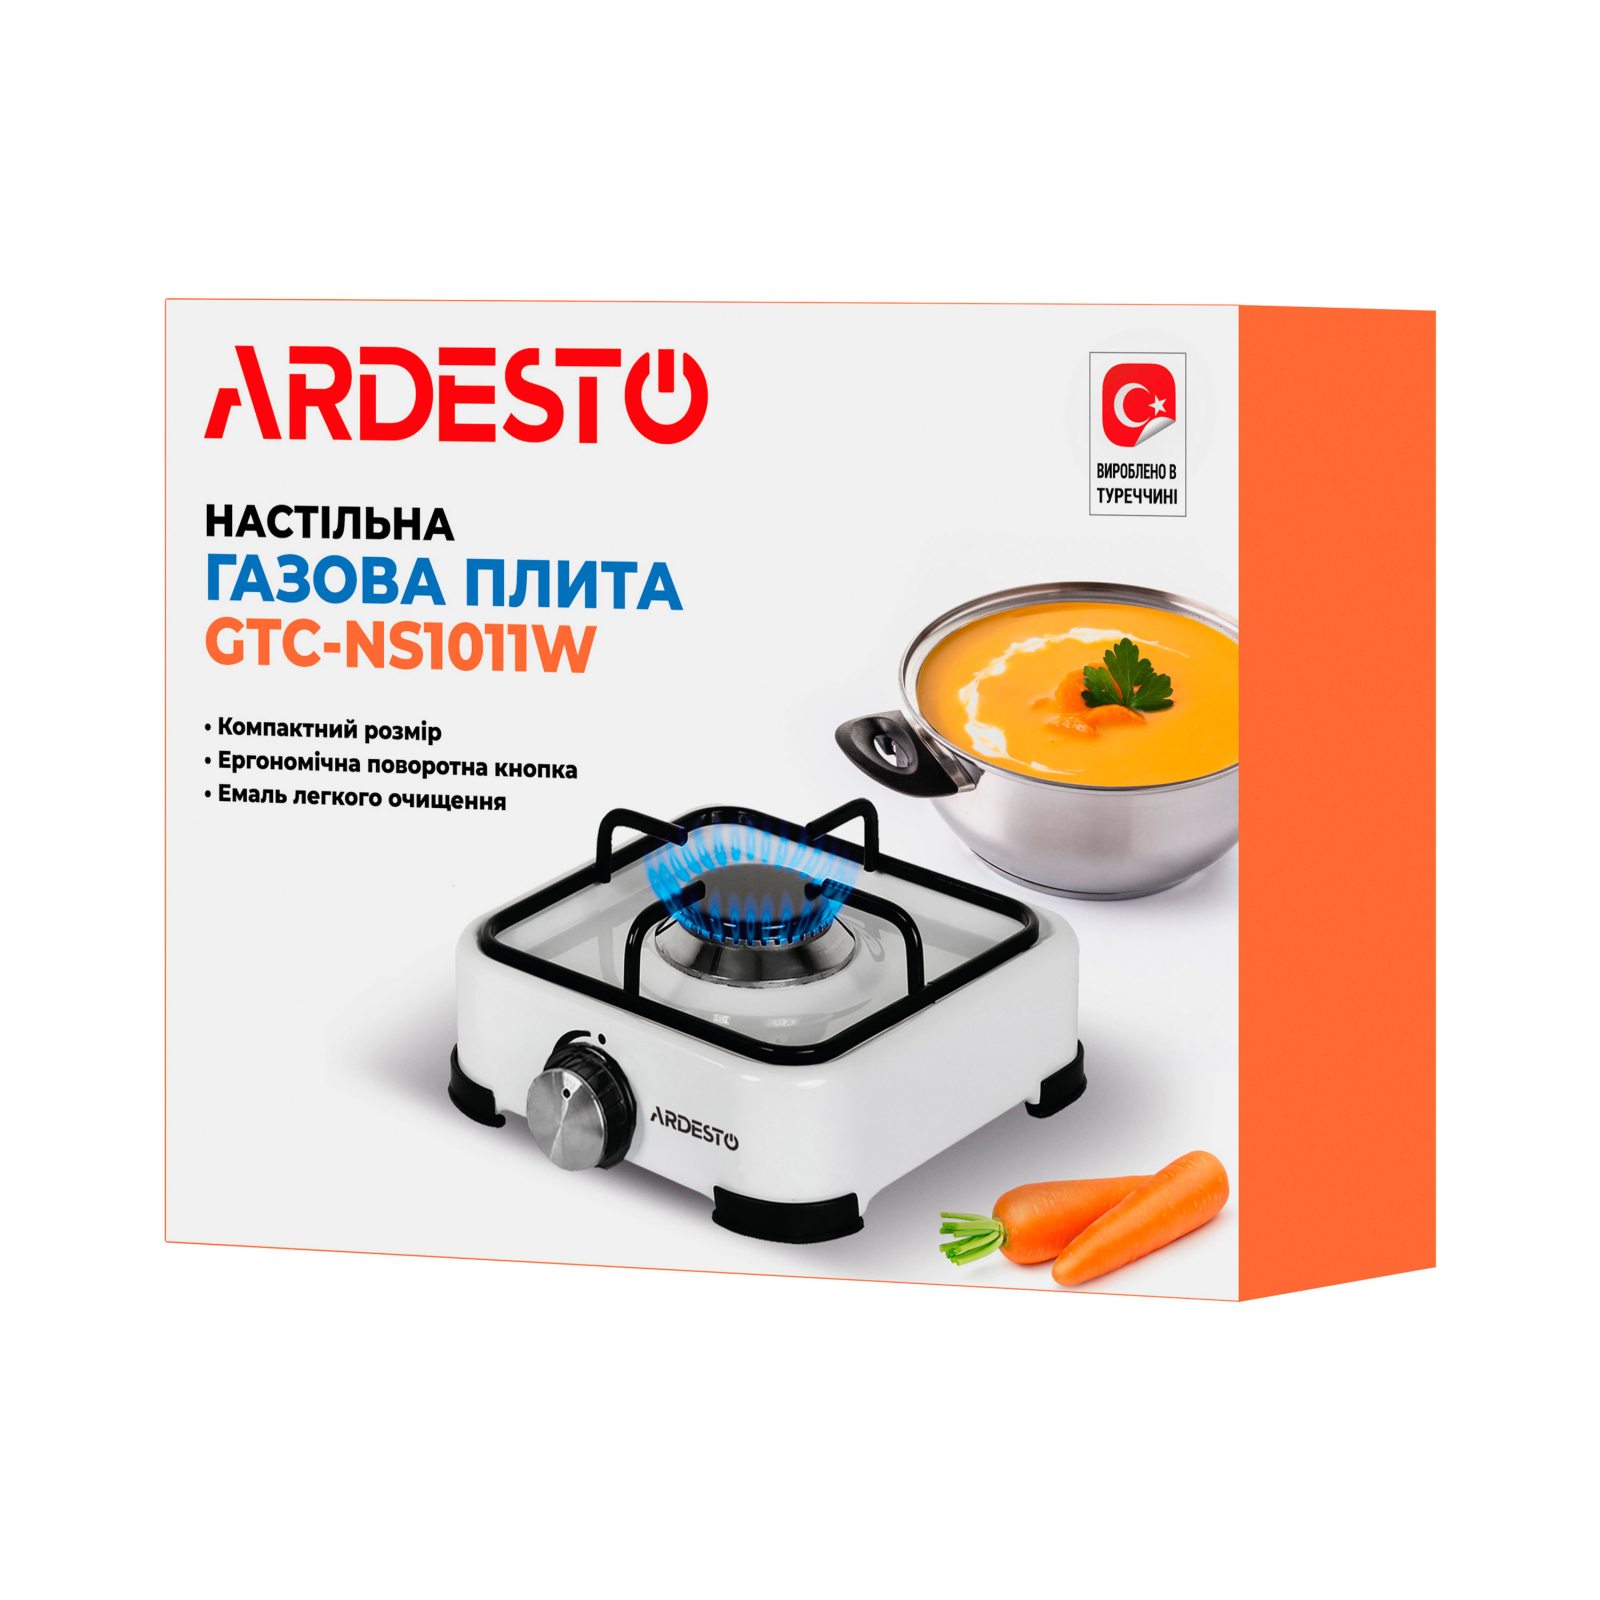 Настільна плита Ardesto GTC-NS1011W зображення 7